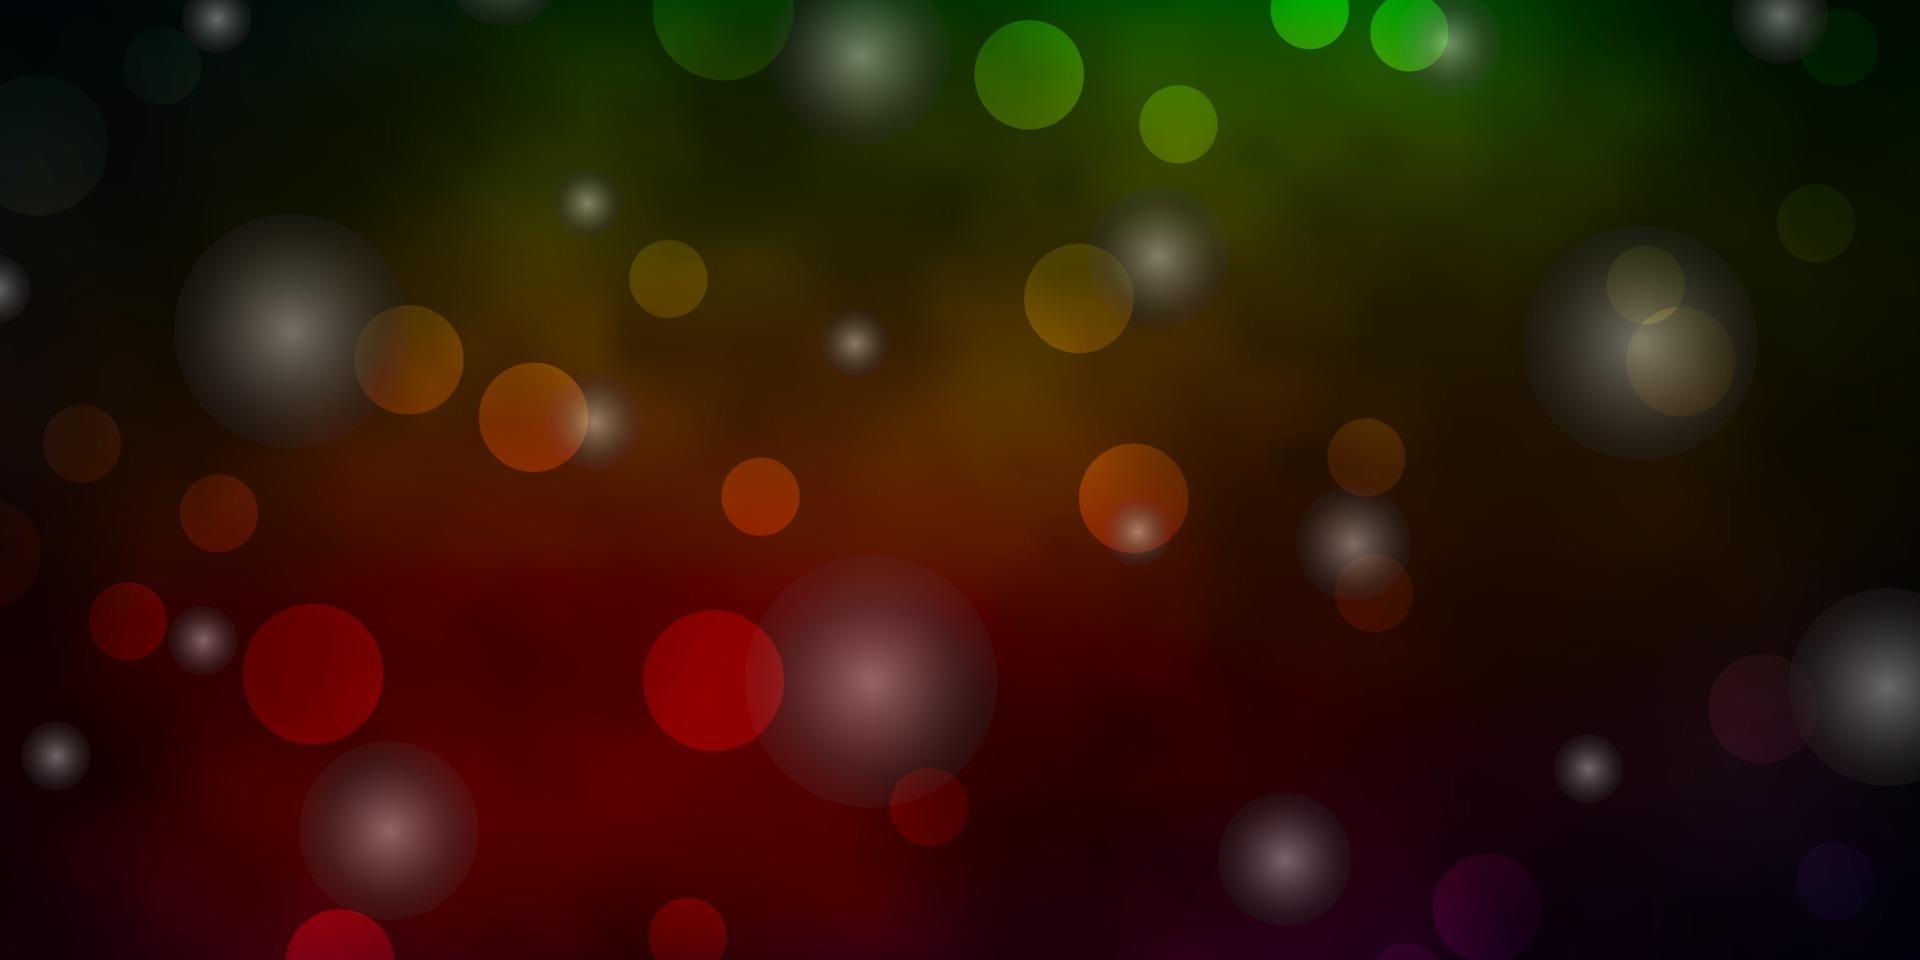 plantilla de vector verde oscuro, rojo con círculos, estrellas.